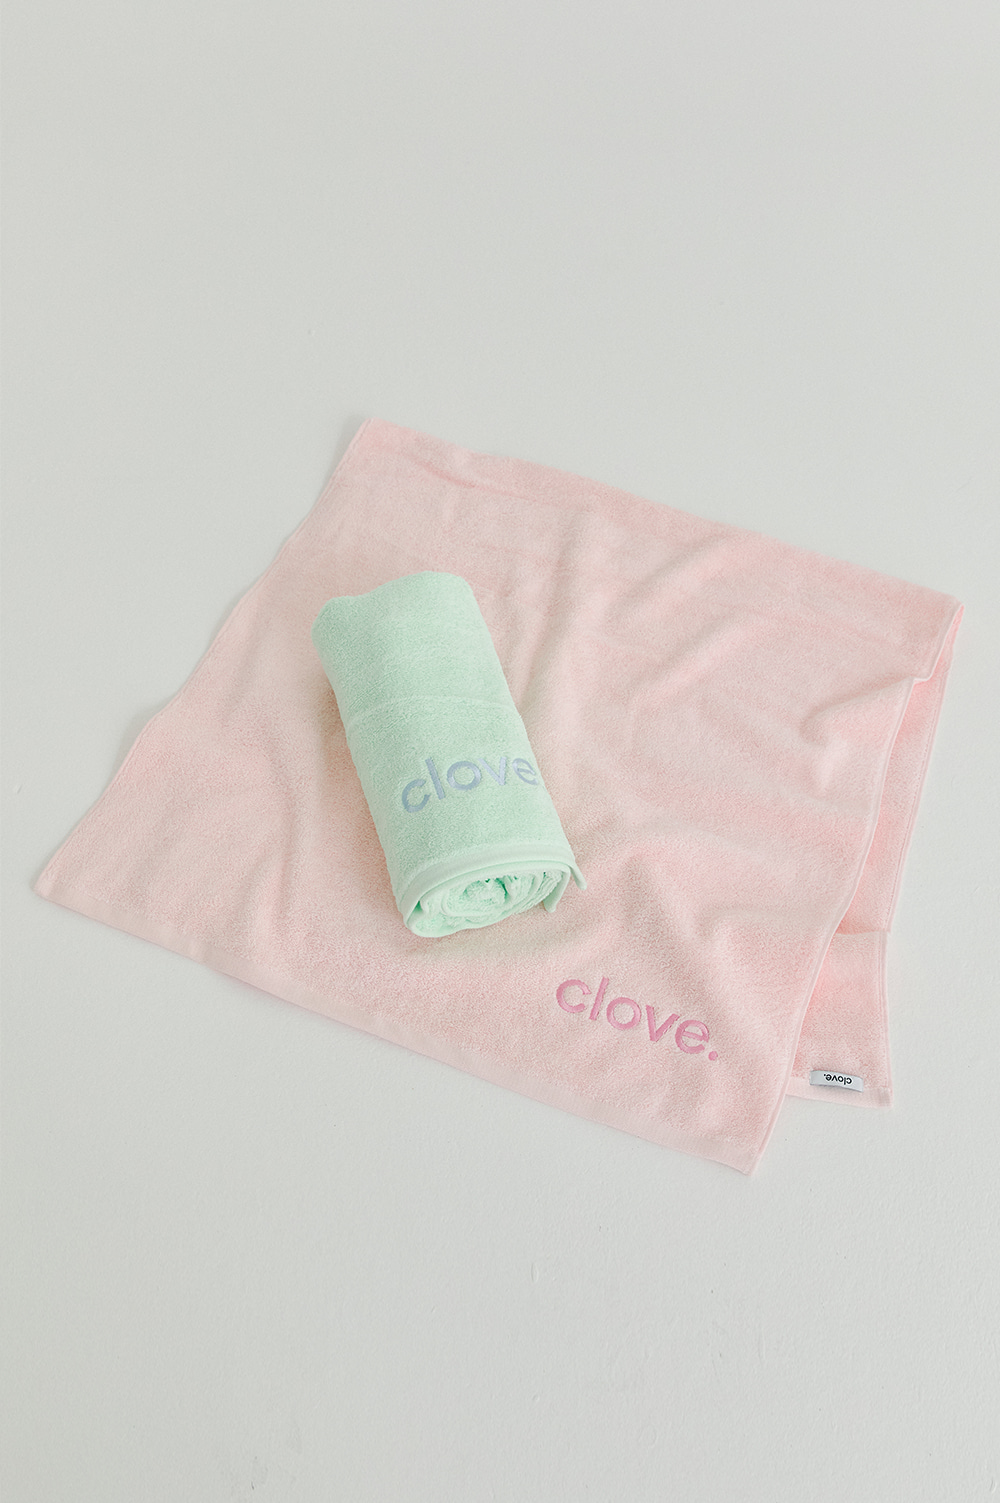 clove - [22SS clove] Logo Beach Towel